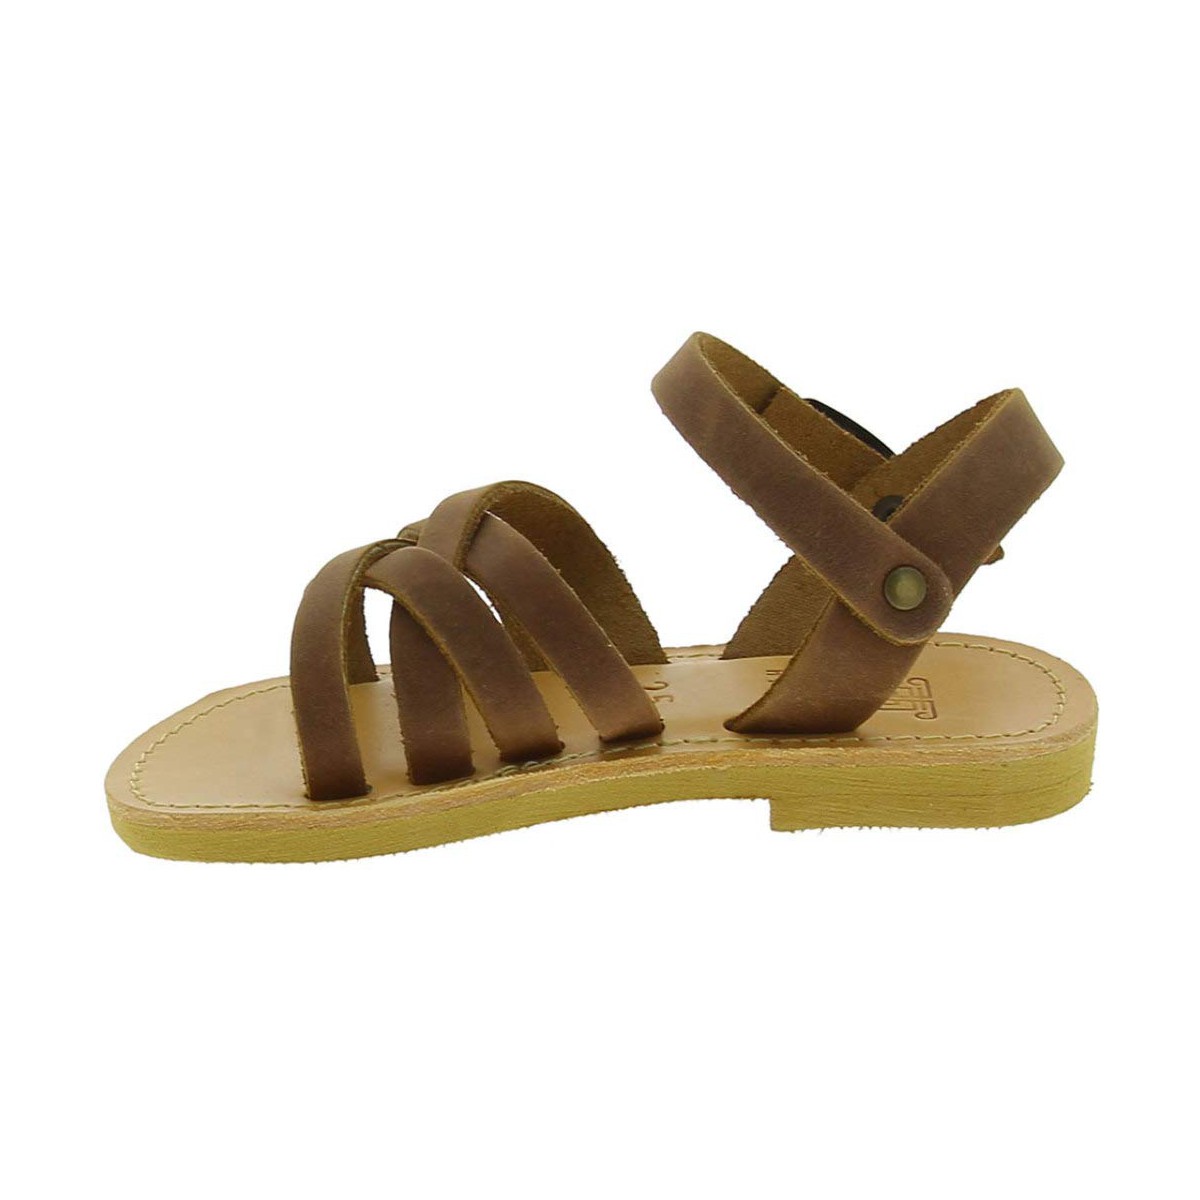 Attica sandals Sandalias gladiadoras trenzadas para niño en piel nobuck marrón con cierre de hebilla Zapatos Zapatos para niño Sandalias 